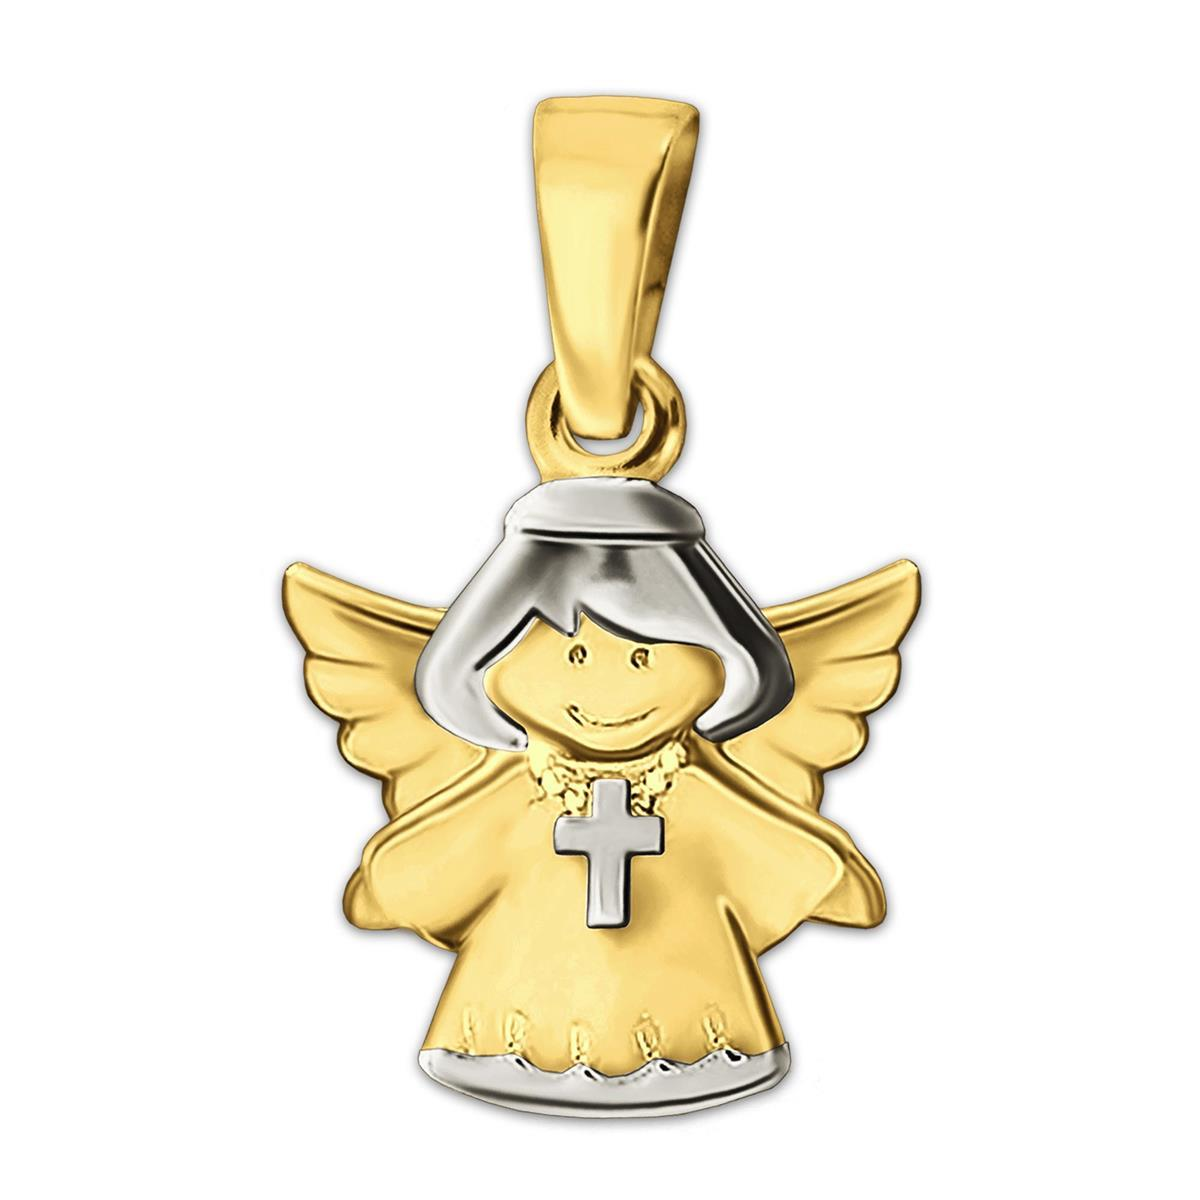 Goldener Kinderengel 13 mm Kreuz tragend glänzend bicolor 333 GOLD 8 KARAT für Kinder